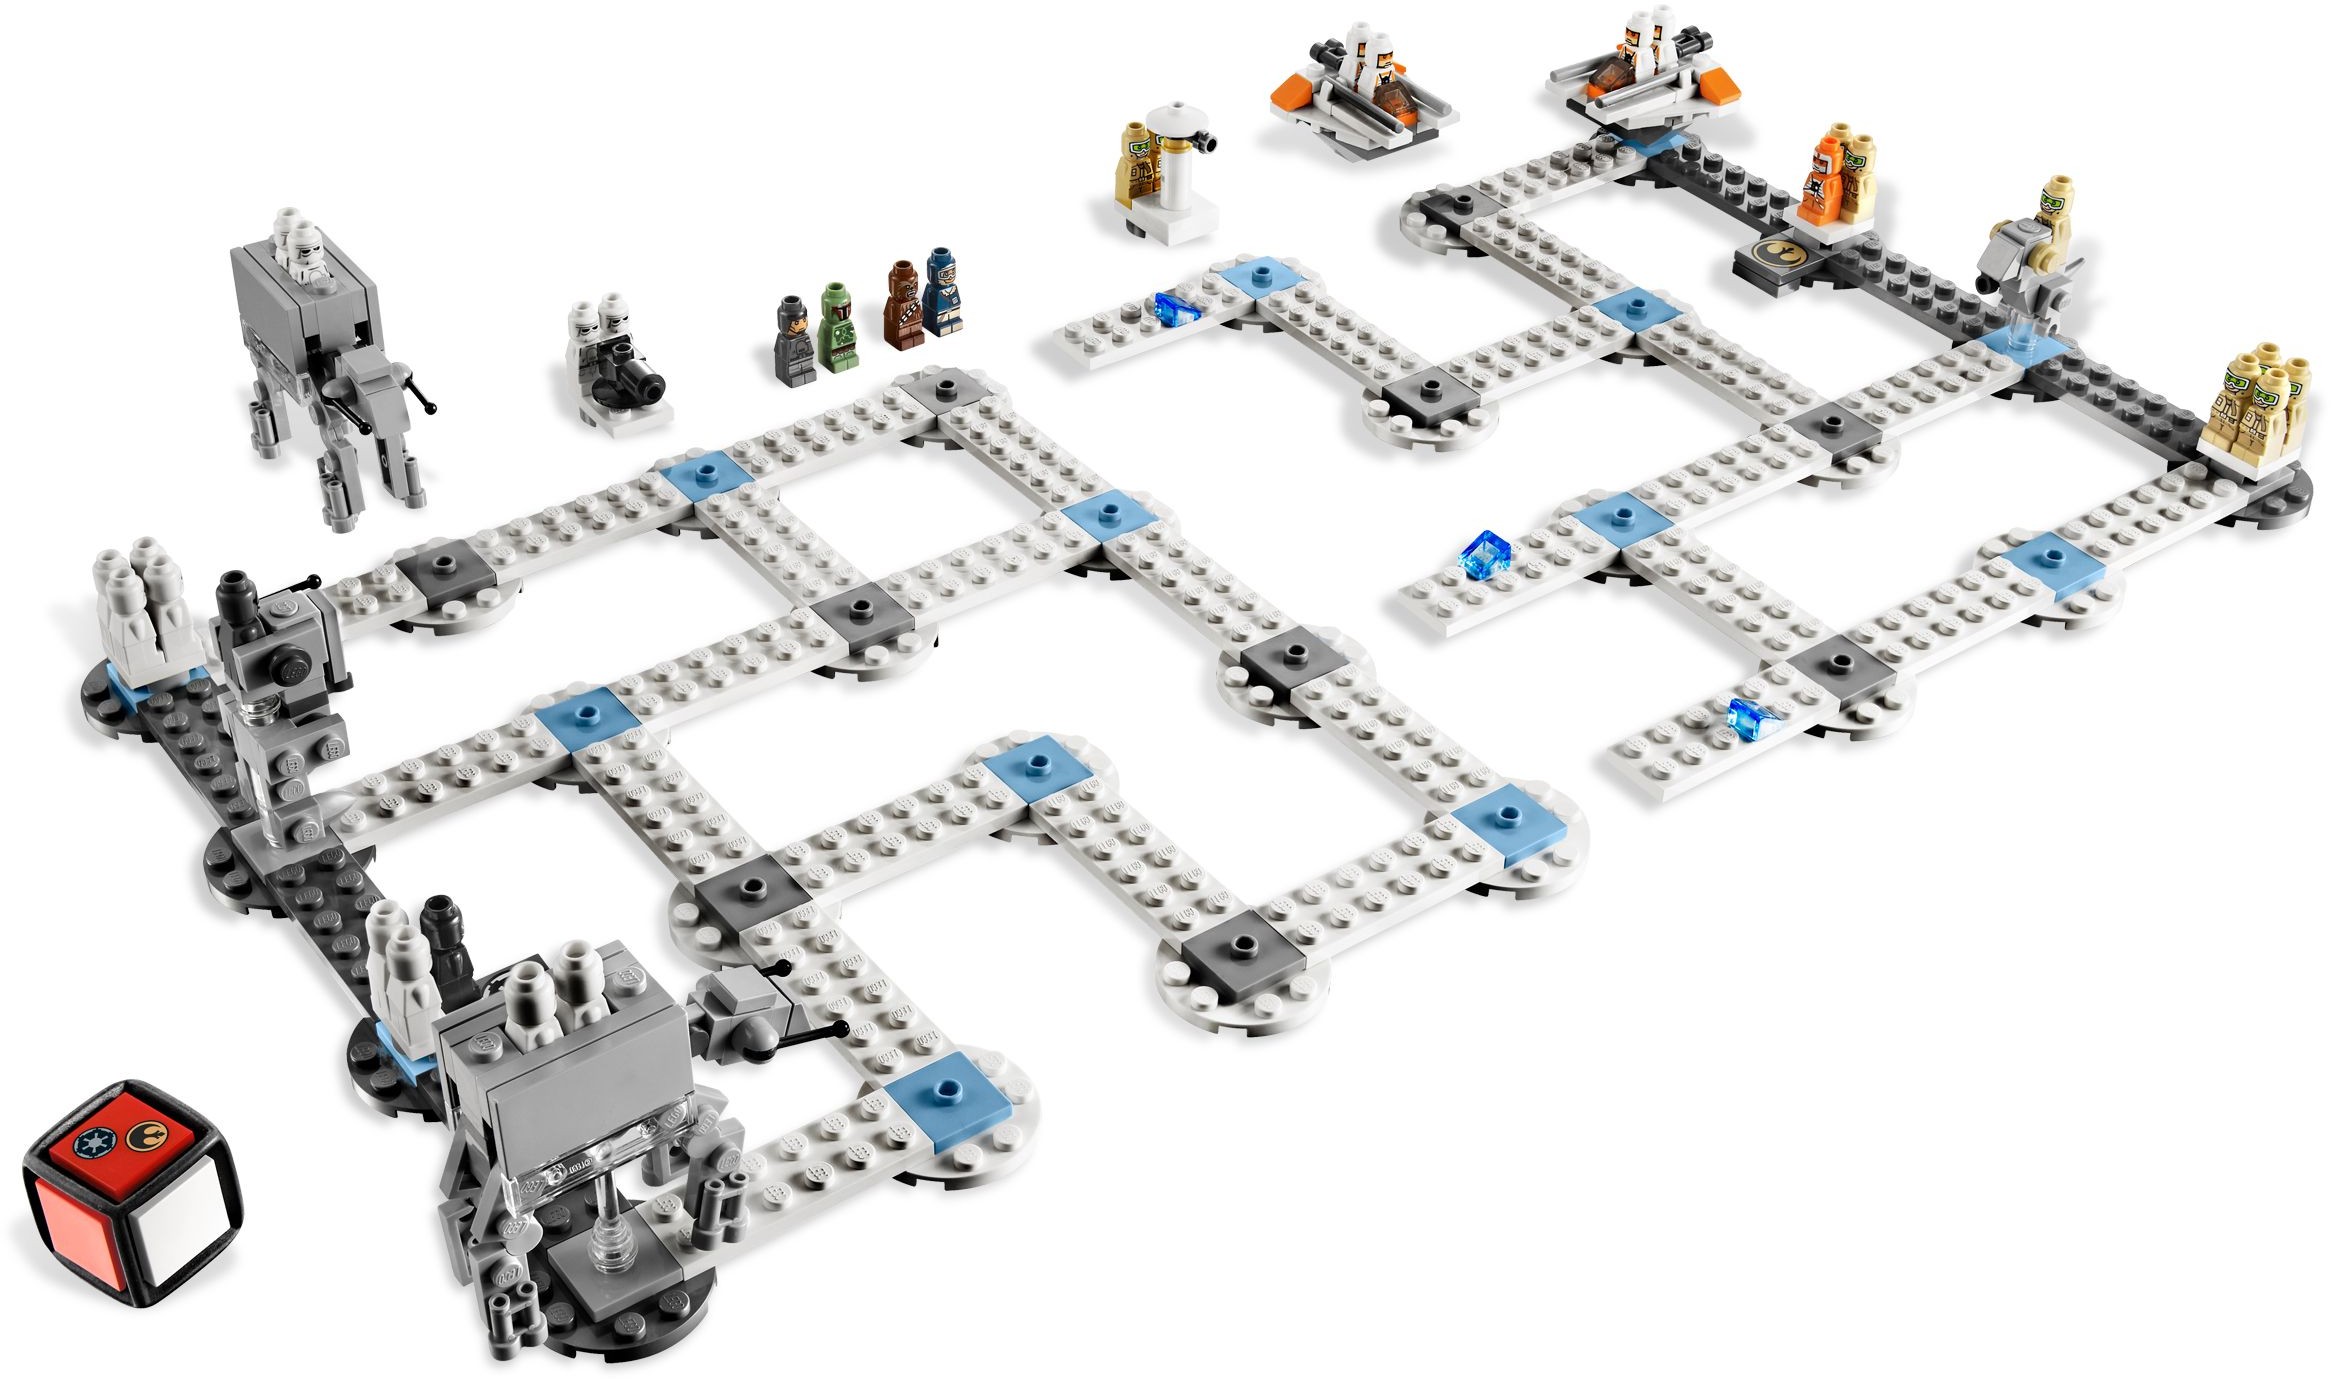 Lego® Star Wars 15x Micro Figuren AT-ST Pilot aus Set Hoth 3866 Neu